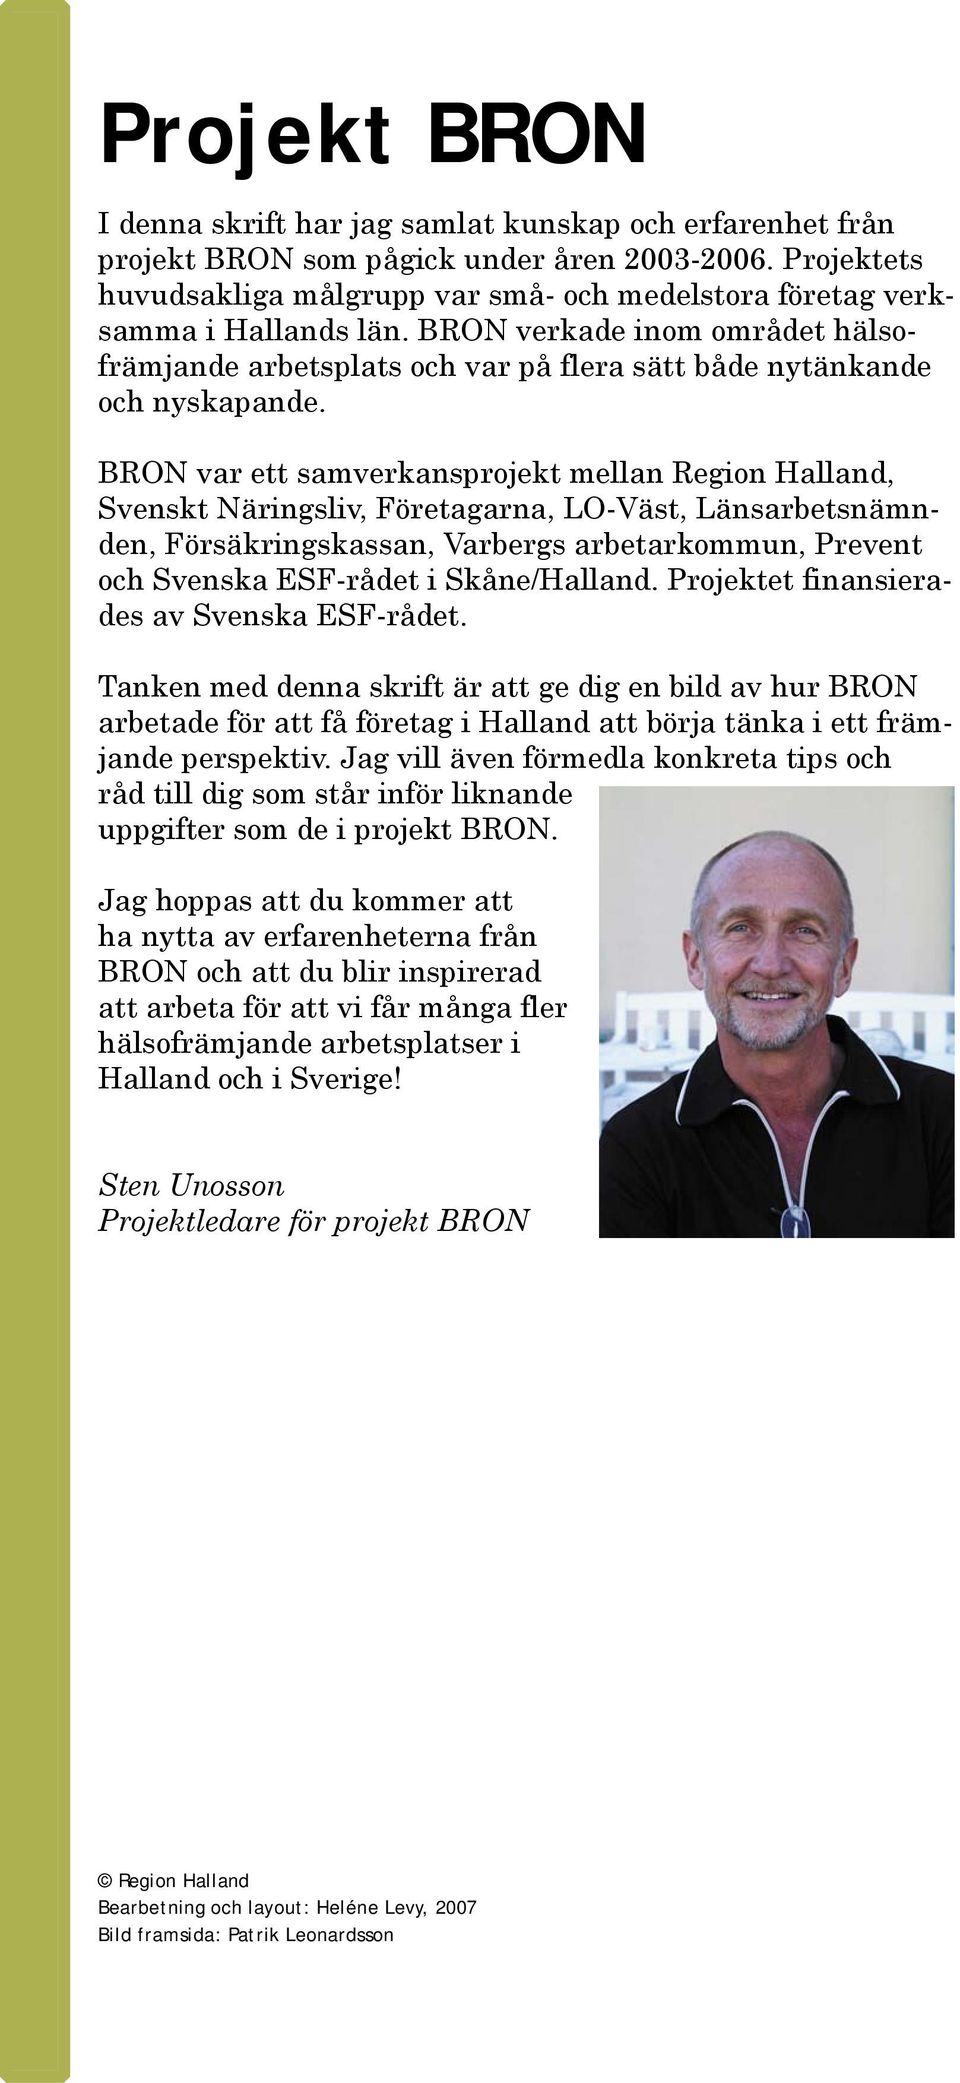 BRON var ett samverkansprojekt mellan Region Halland, Svenskt Näringsliv, Företagarna, LO-Väst, Länsarbetsnämnden, Försäkringskassan, Varbergs arbetarkommun, Prevent och Svenska ESF-rådet i